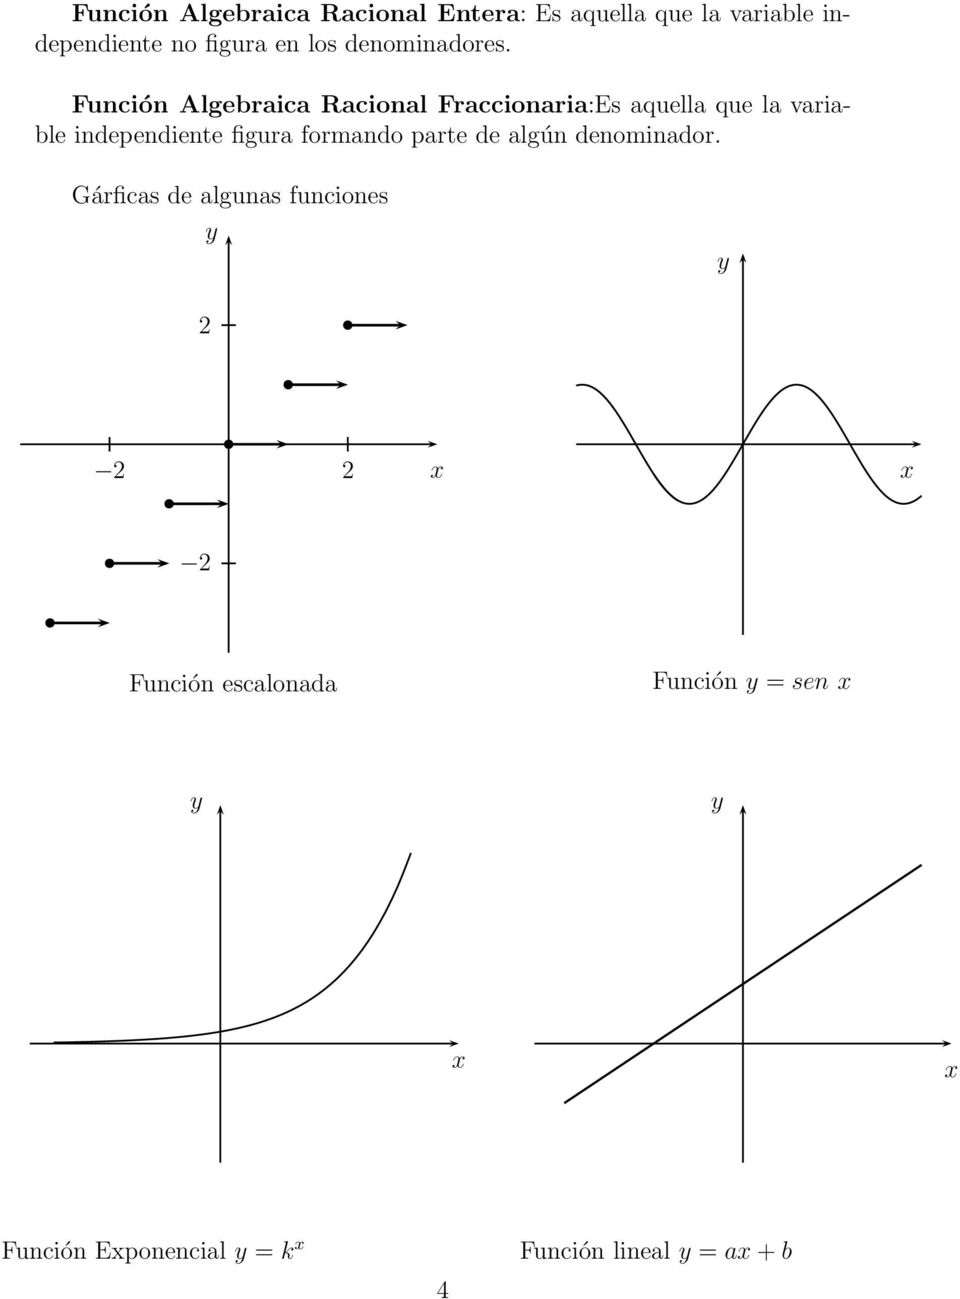 Función Algebraica Racional Fraccionaria:Es aquella que la variable independiente